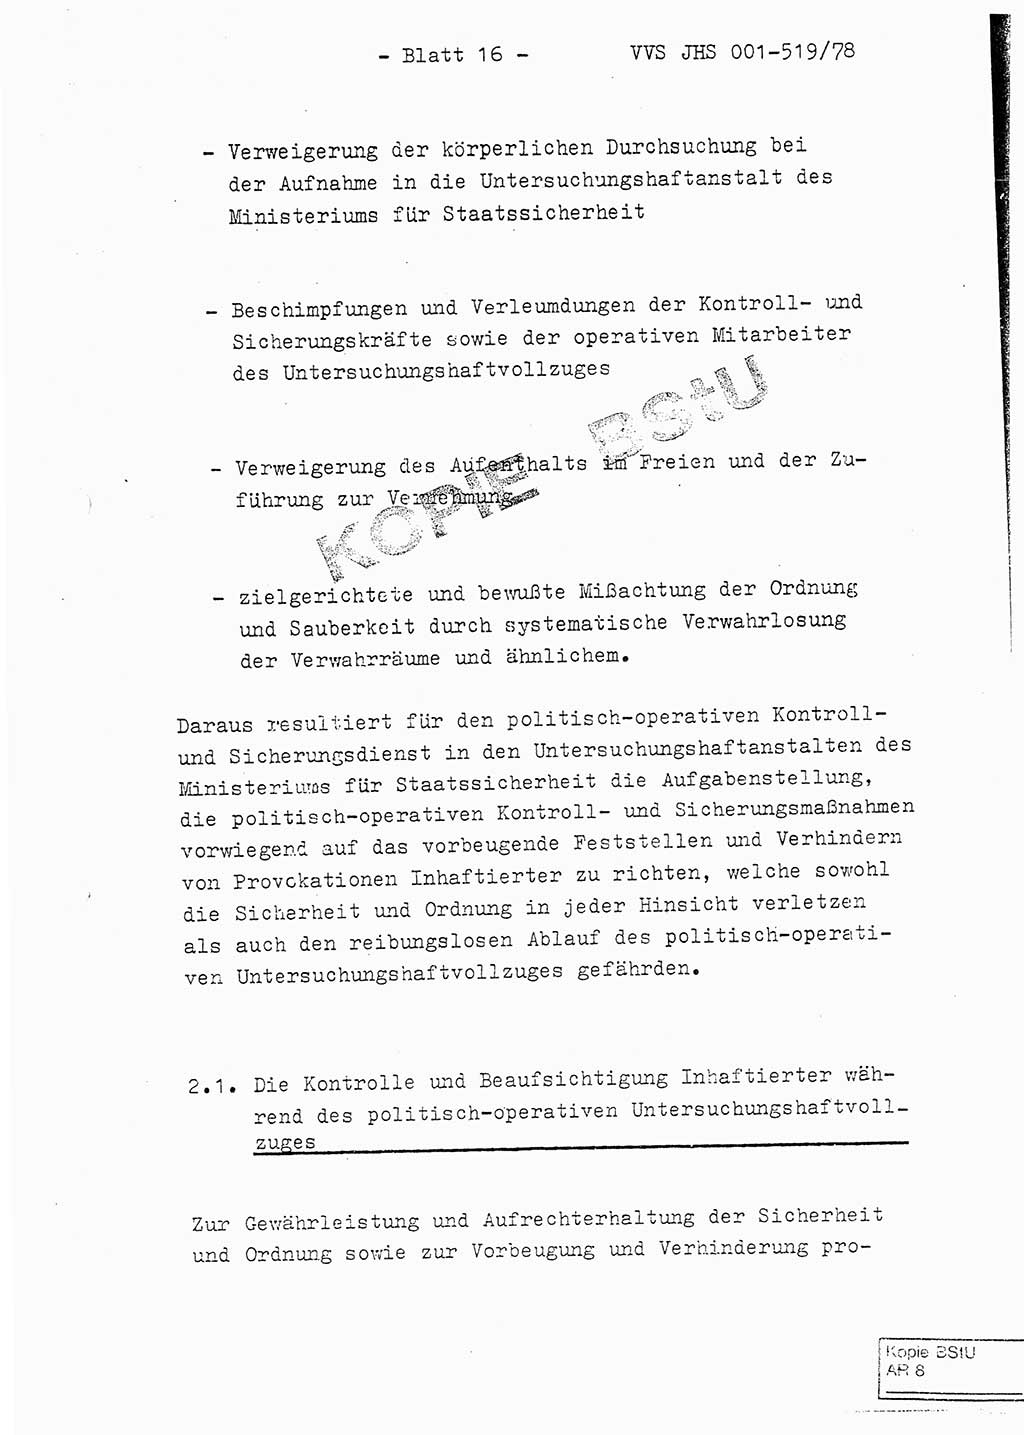 Fachschulabschlußarbeit Hauptmann Alfons Lützelberger (Abt. ⅩⅣ), Ministerium für Staatssicherheit (MfS) [Deutsche Demokratische Republik (DDR)], Juristische Hochschule (JHS), Vertrauliche Verschlußsache (VVS) 001-519/78, Potsdam 1978, Blatt 16 (FS-Abschl.-Arb. MfS DDR JHS VVS 001-519/78 1978, Bl. 16)